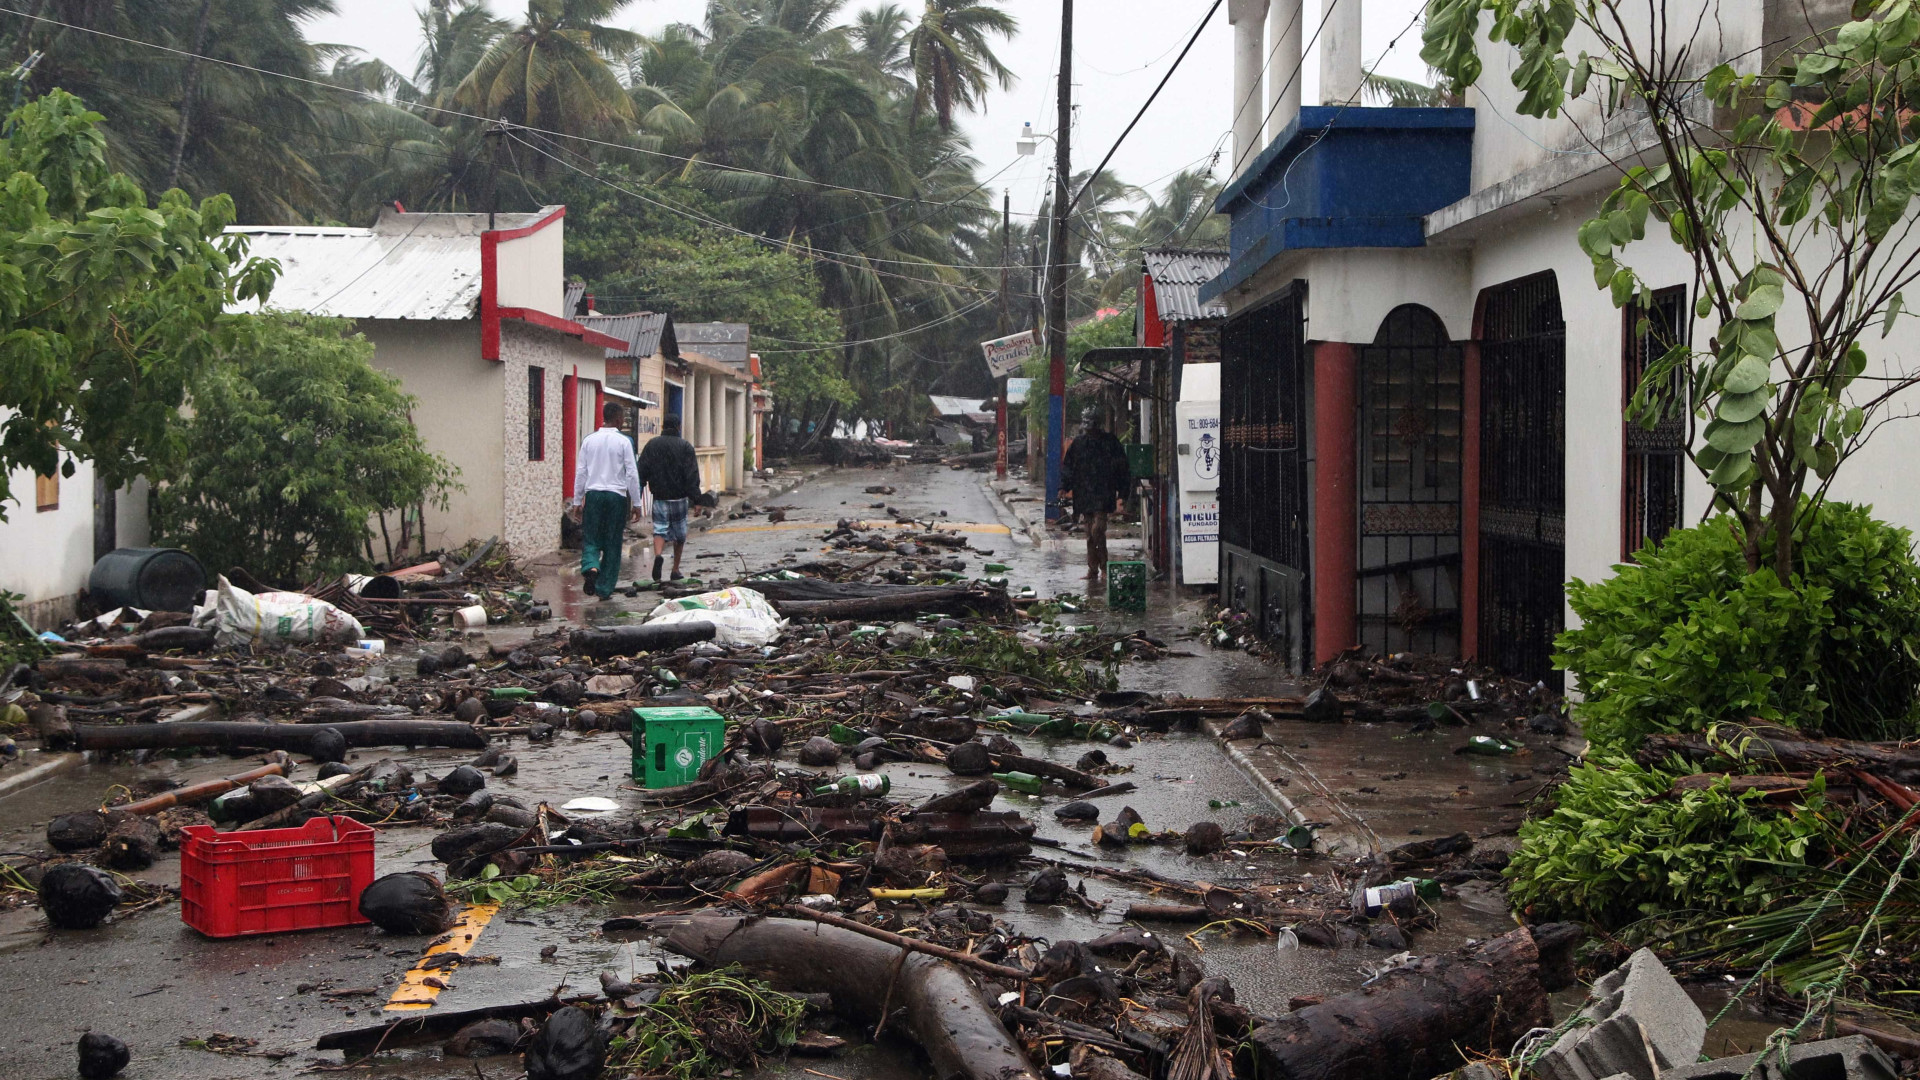 Fotos mostram rastro de destruição deixado pelo furacão Irma no Caribe